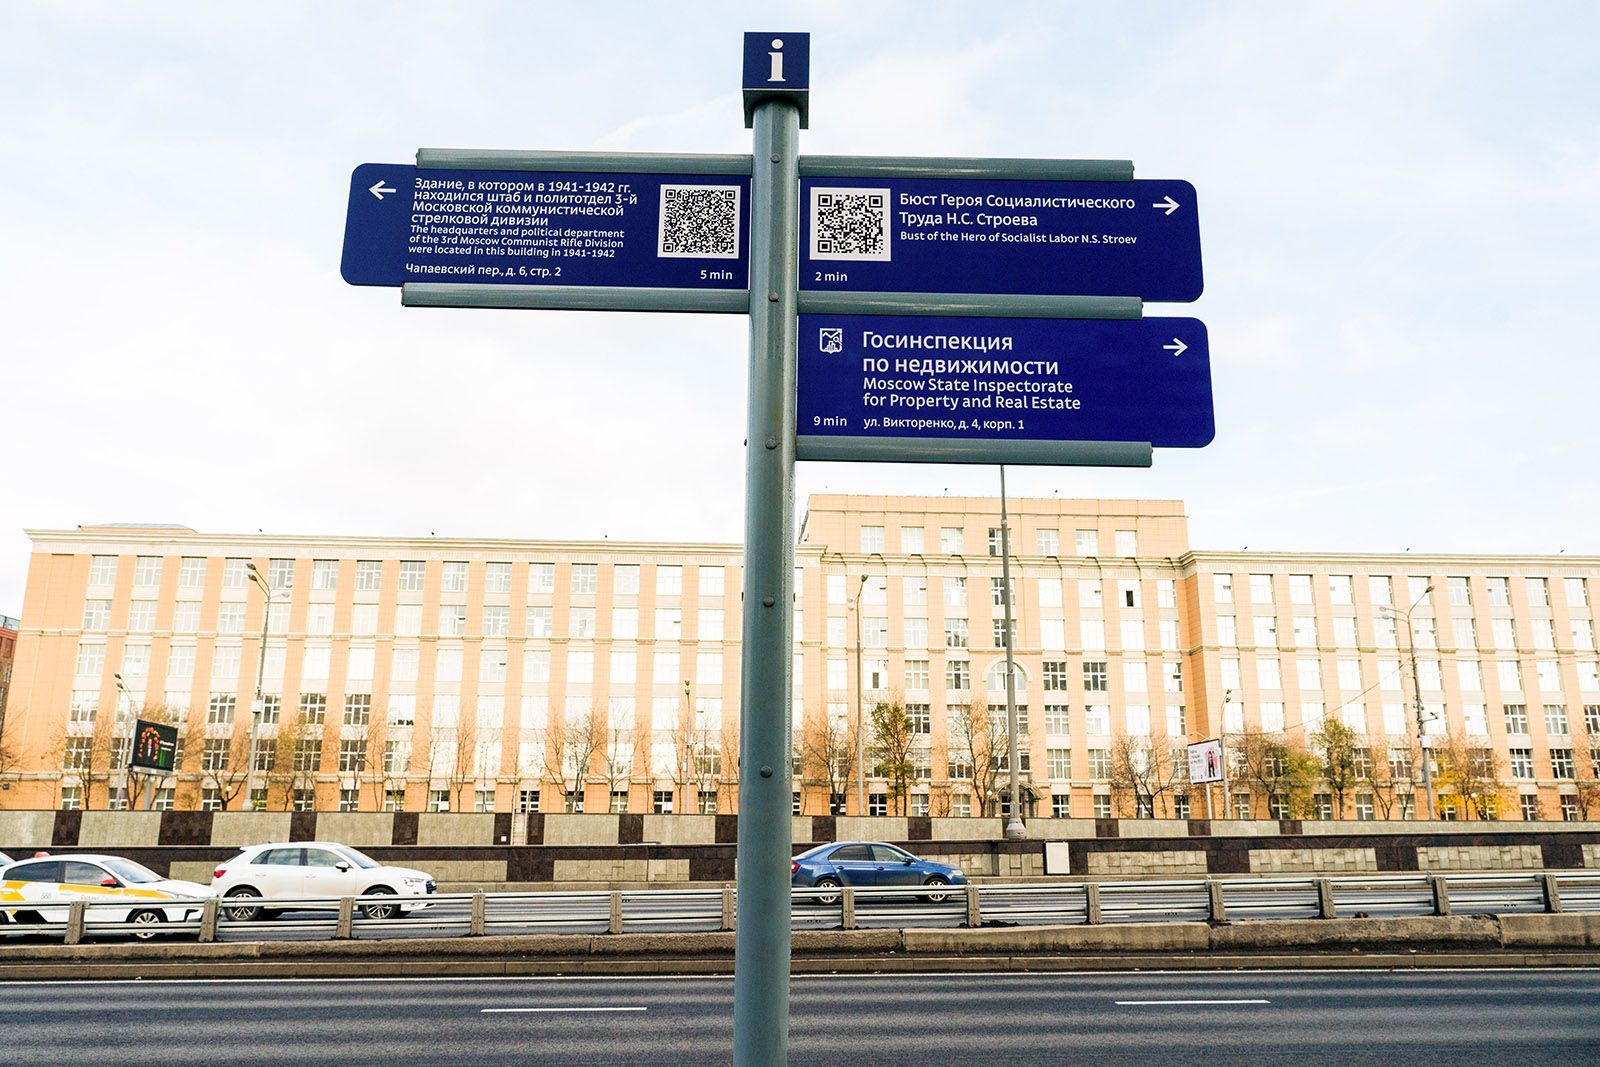 Узнать возраст памятника, составить маршрут и купить билет на каток: как москвичи используют QR-коды. Официальный сайт Мэра Москвы